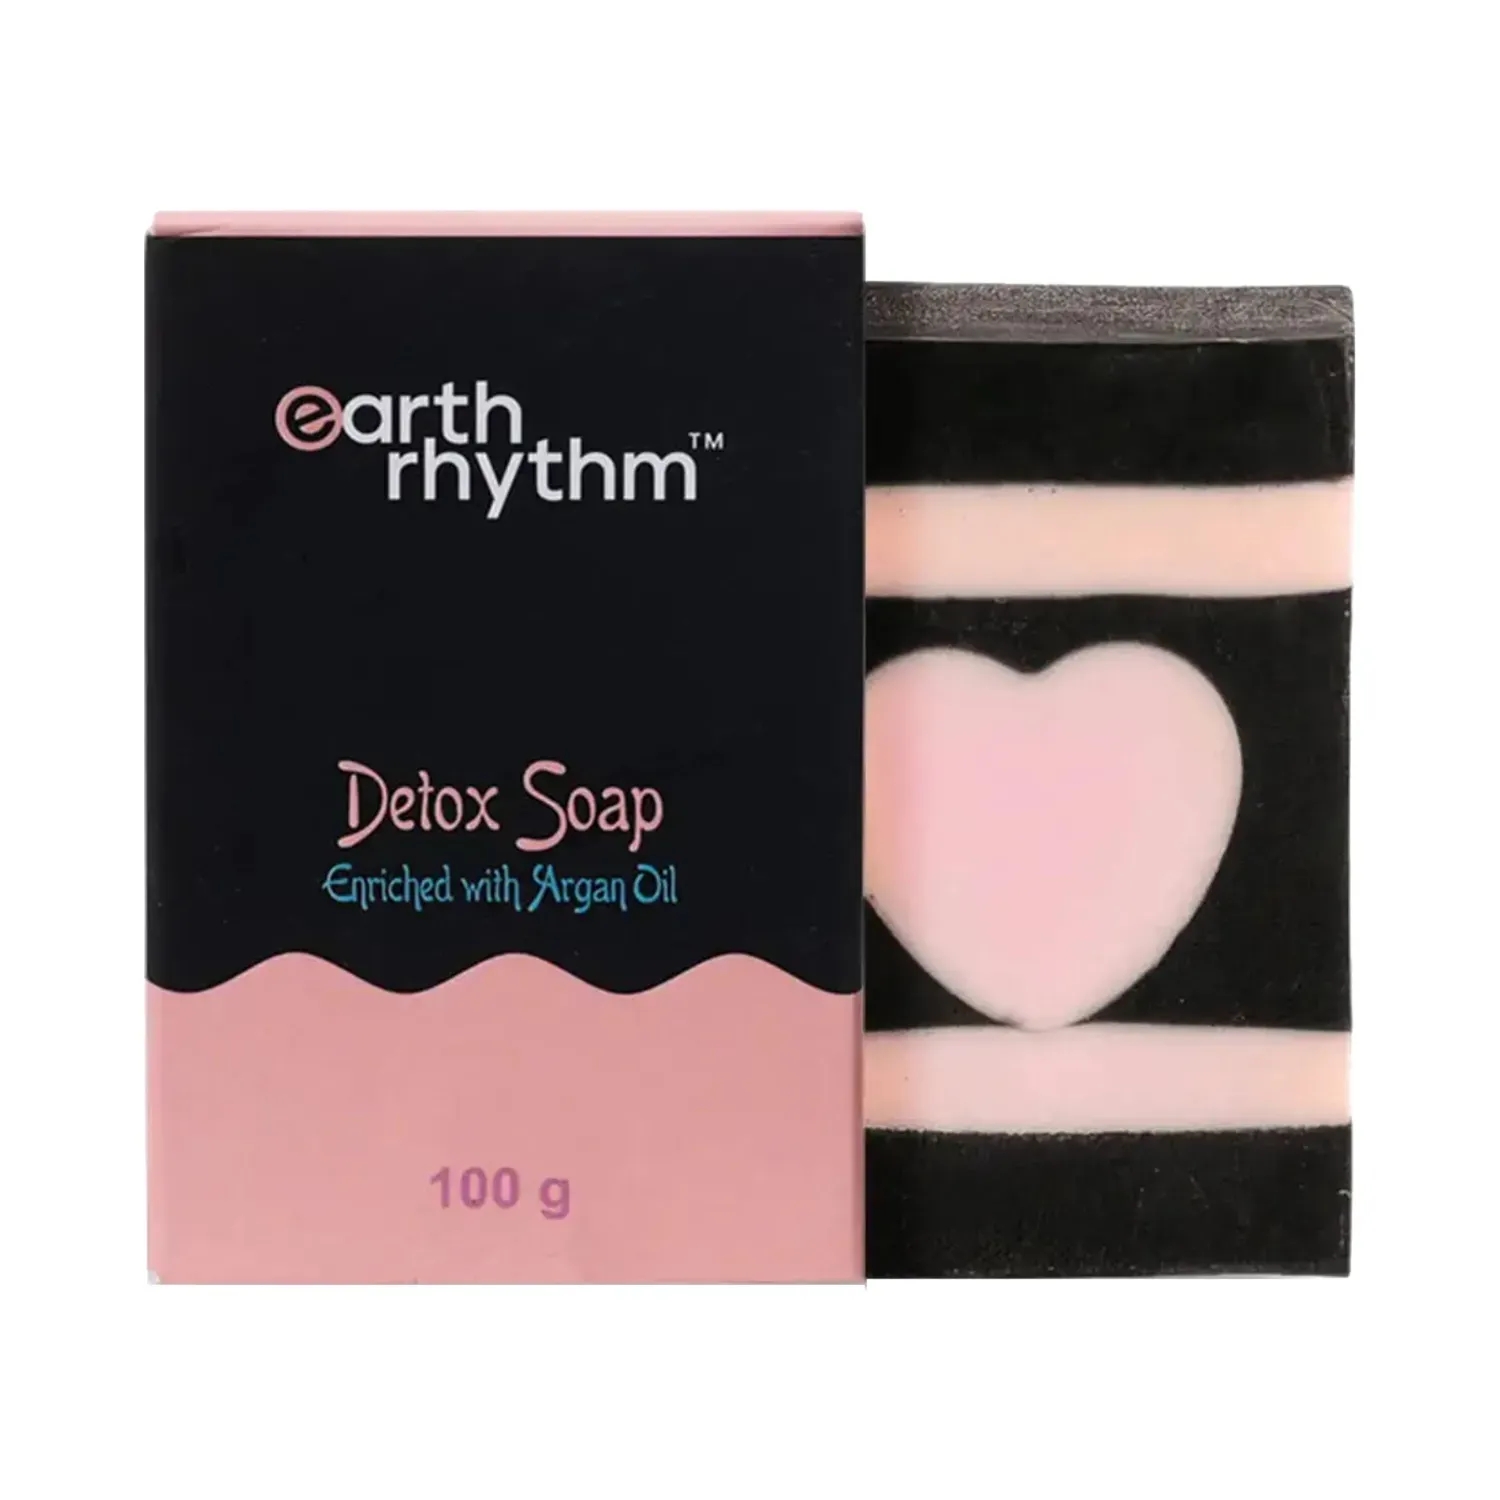 Earth Rhythm Detox Soap With Argan Oil (100g)